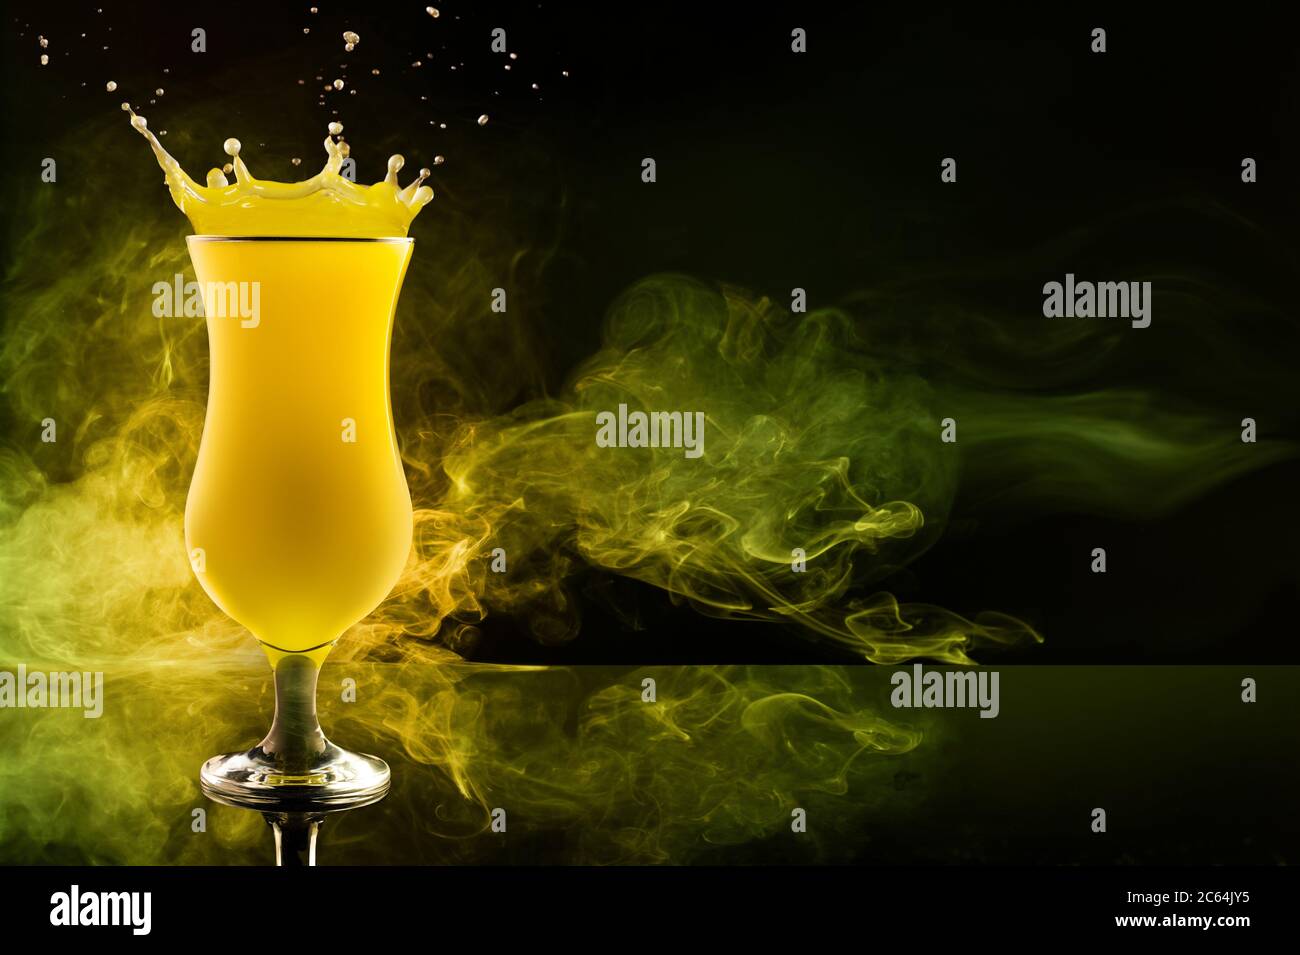 cocktail jaune éclaboussant et tourbillons de fumée sur fond noir Banque D'Images